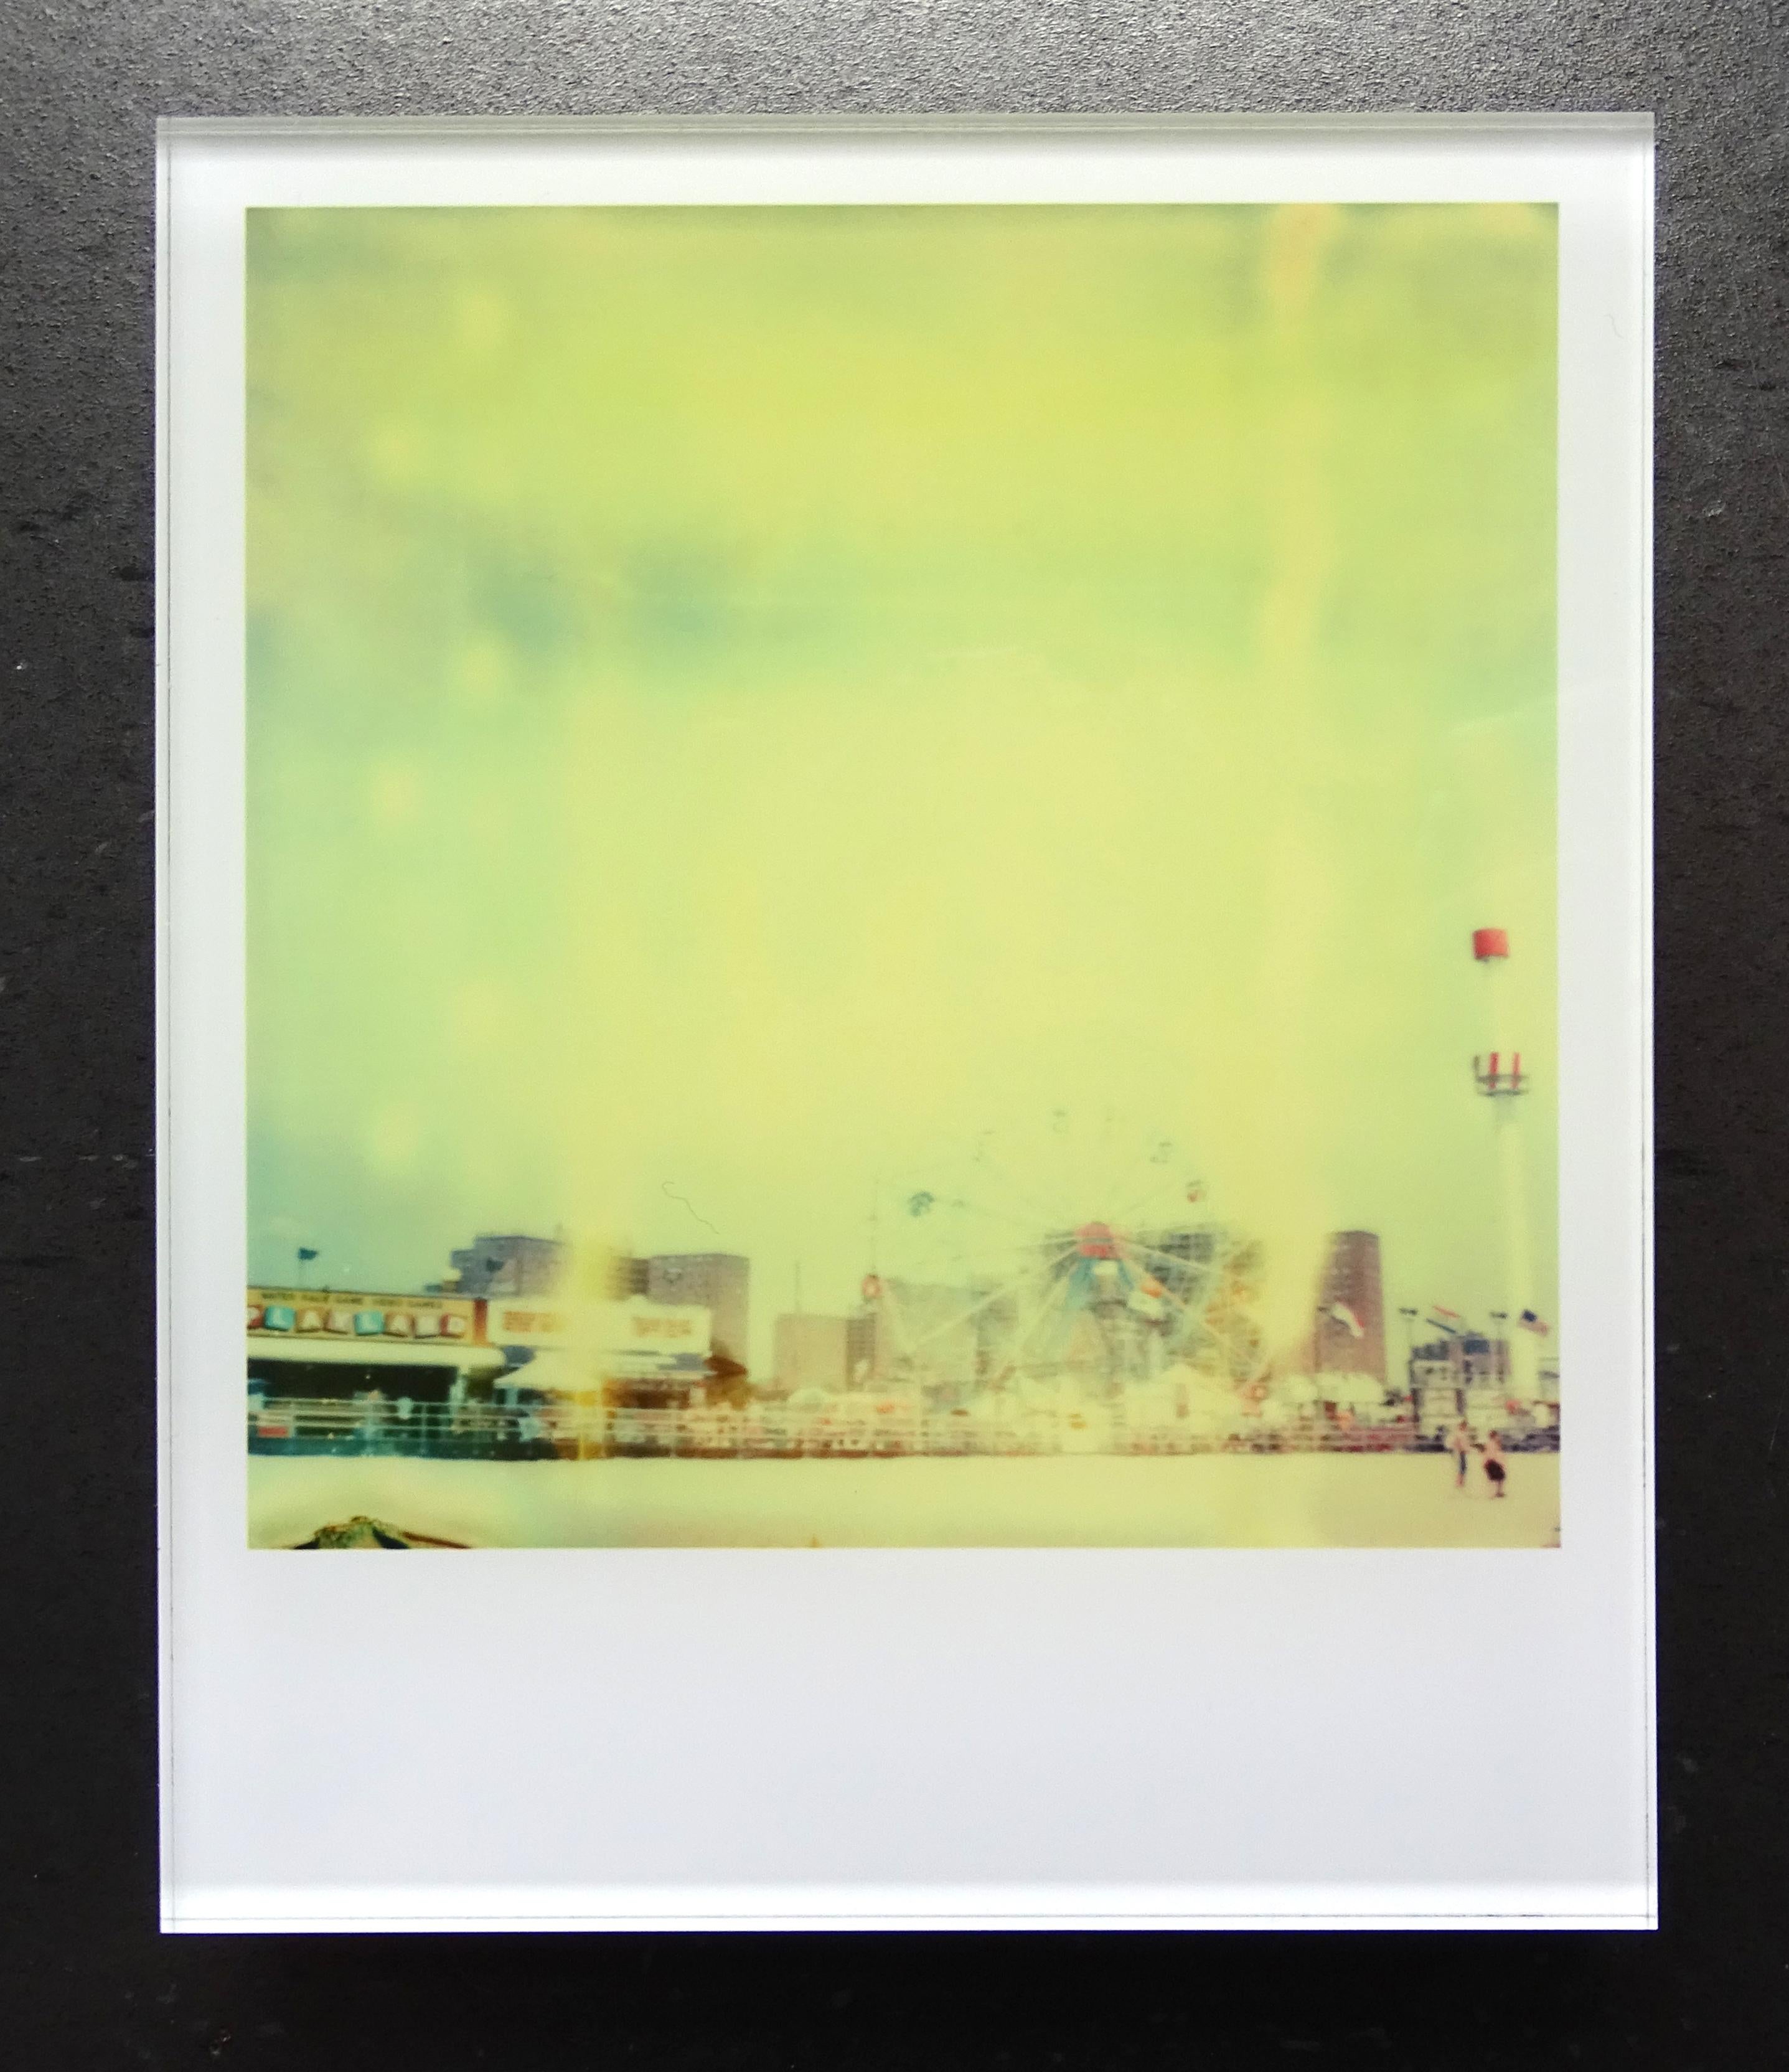 Die Minis von Stefanie Schneider
Coney Island (Aufenthalt), 2006

Verso signiert und Signaturmarke.
Digitale Lambda-Farbfotografien auf Basis der Polaroid.
Eingeklemmt zwischen Plexiglas (Dicke 0,7 cm)

aus dem Film 'Stay' von Marc Forster, mit Ewan